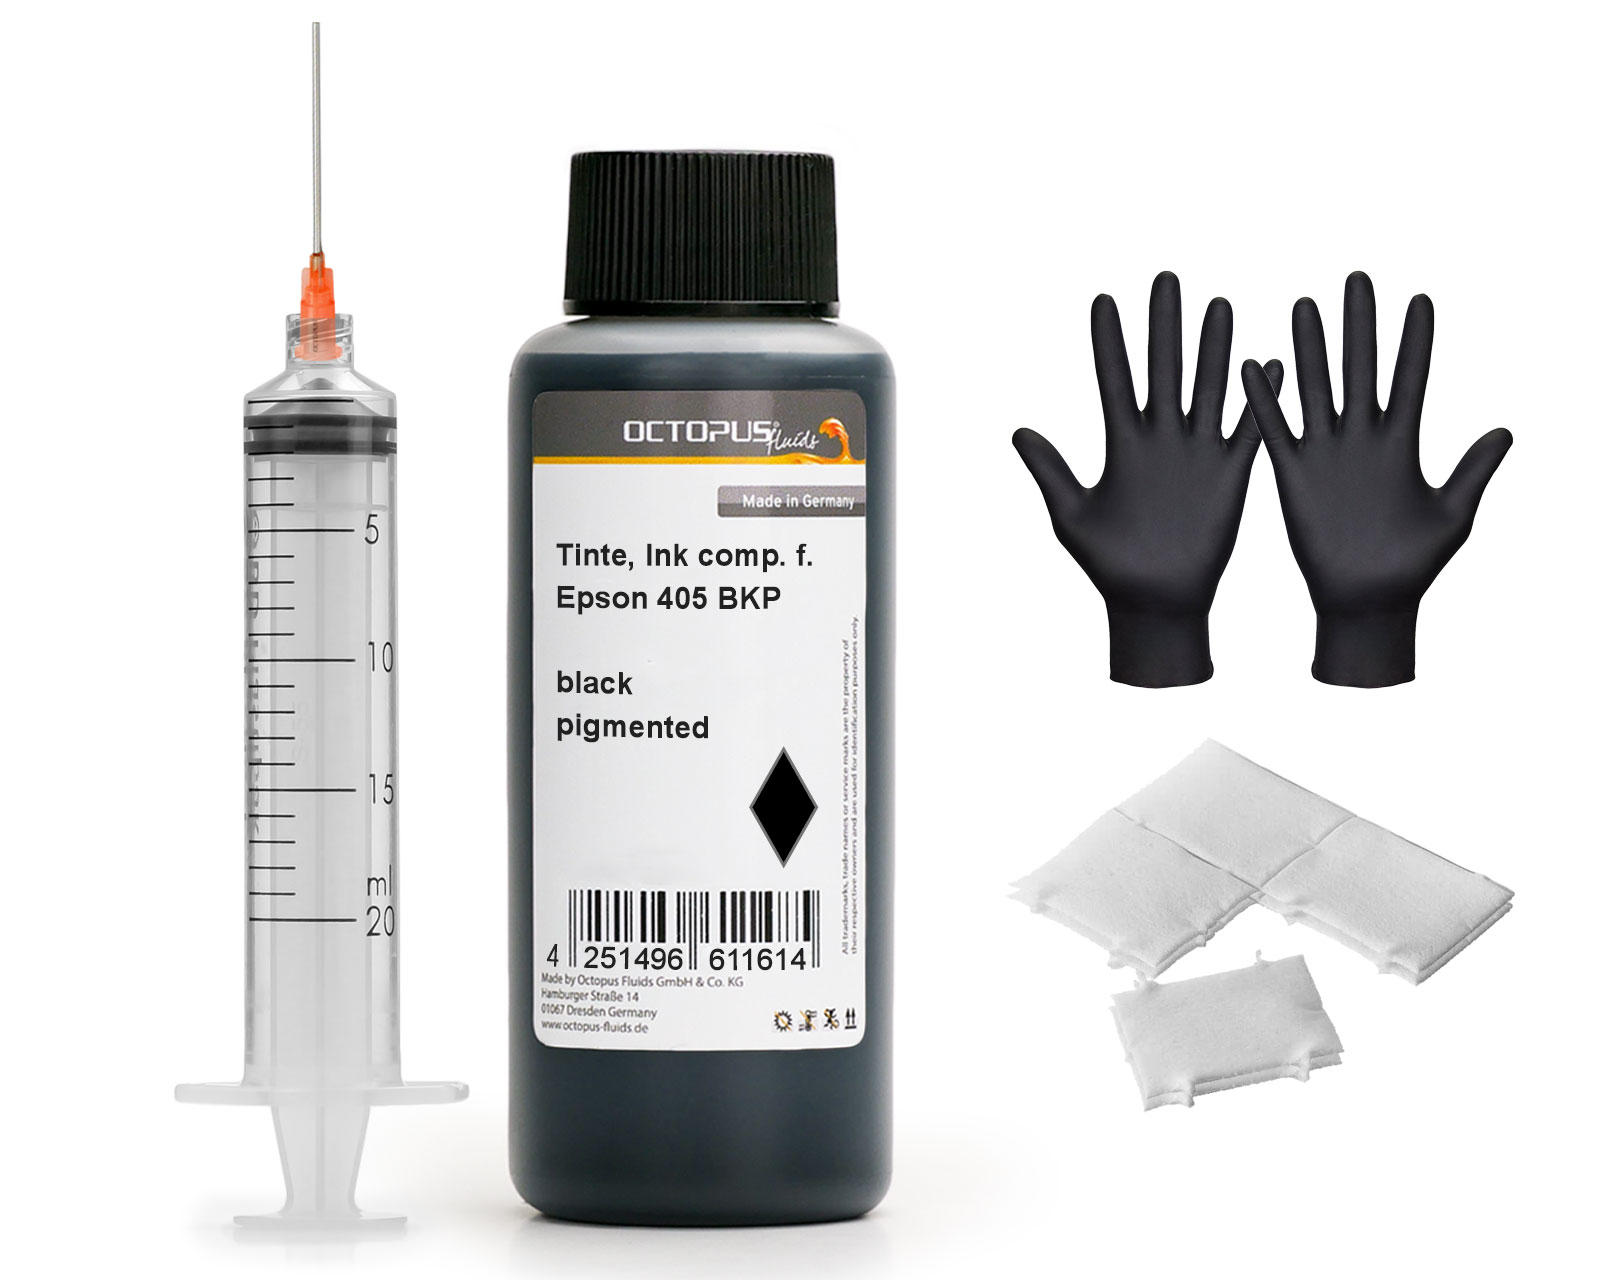 Nachfülltinte für Epson 405 Tintenpatronen, schwarz pigmentiert mit Spritze